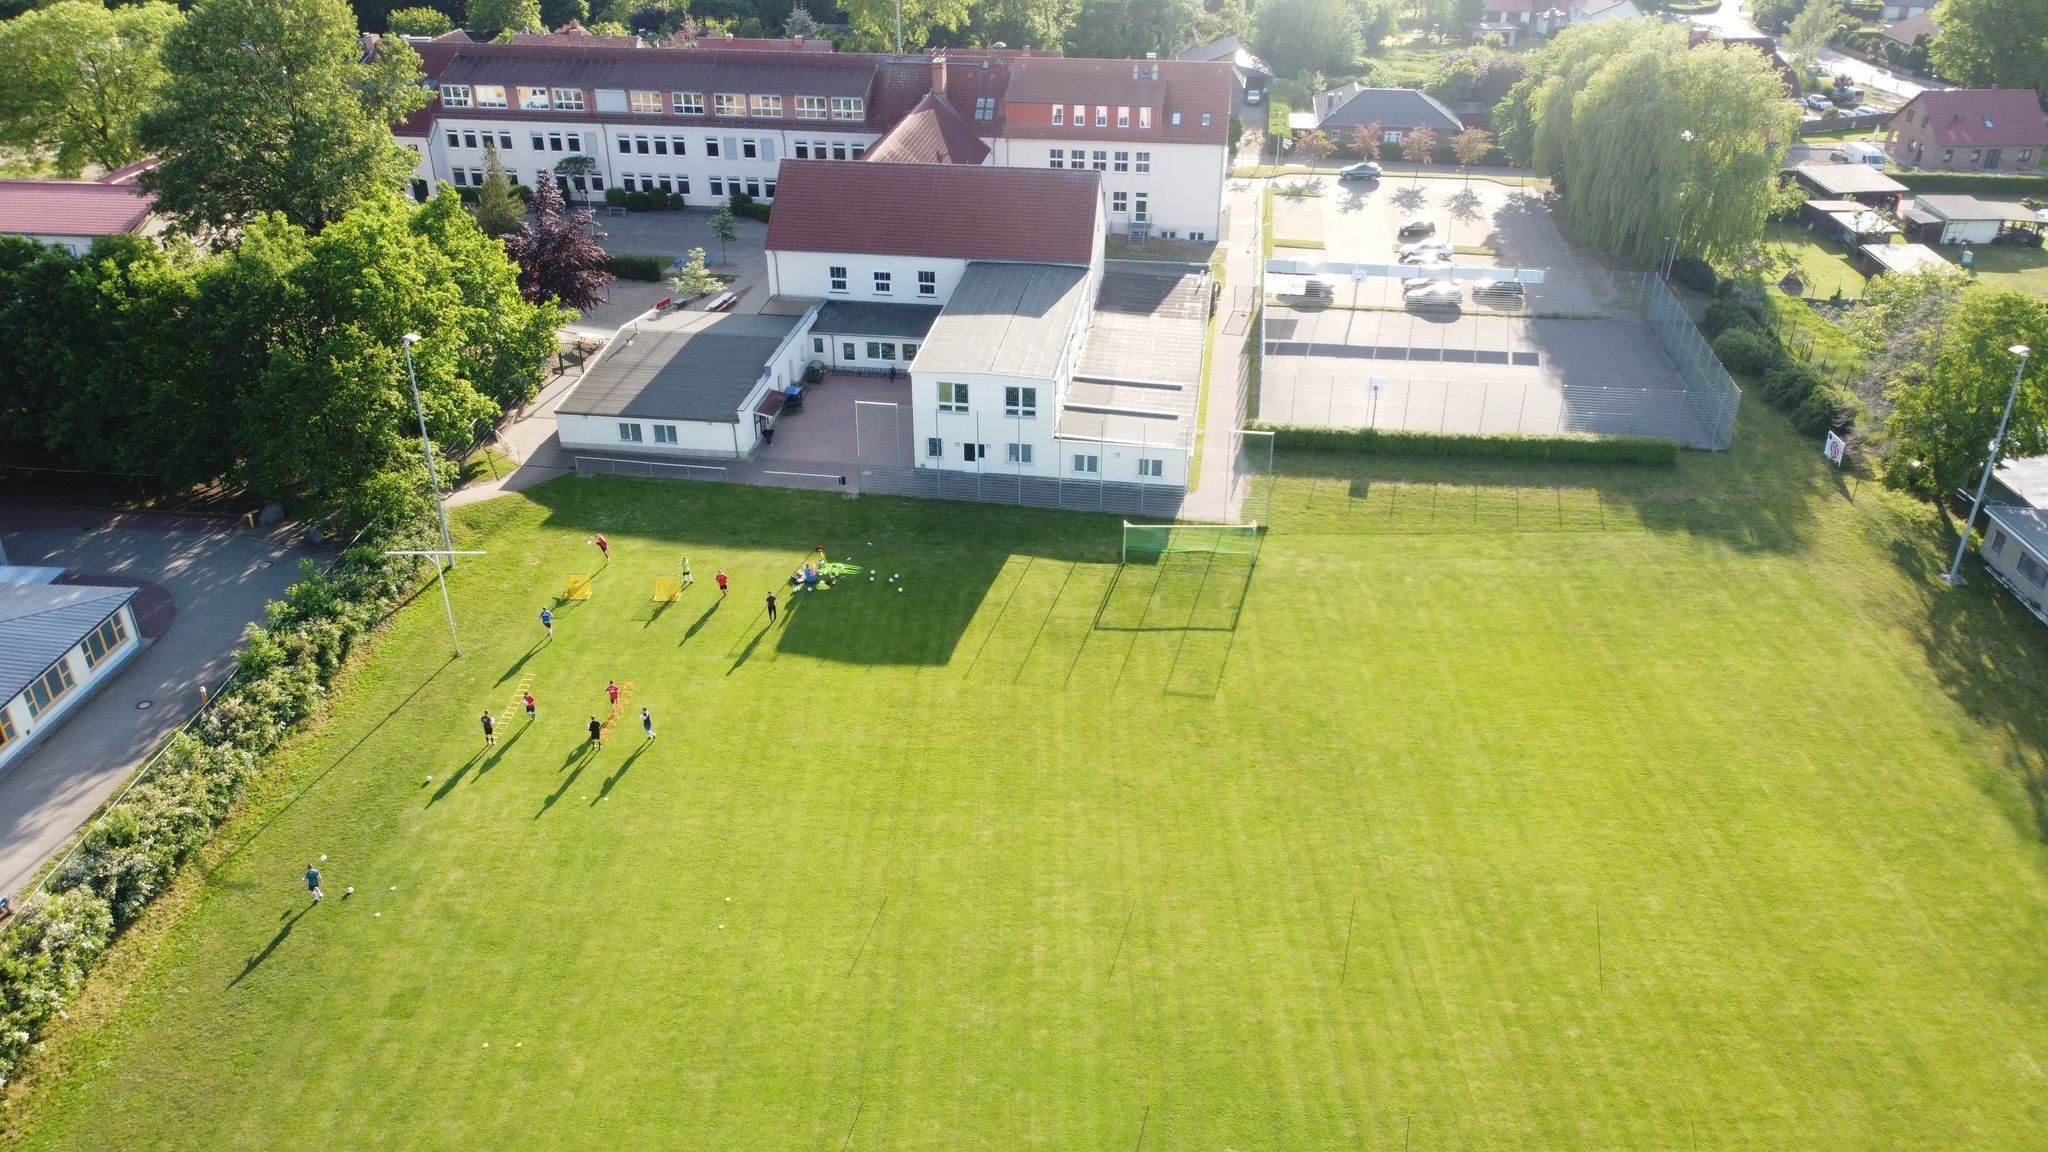 📣 Großartige Neuigkeiten für den SV Stralendorf und seine Gemeinschaft! 🌟